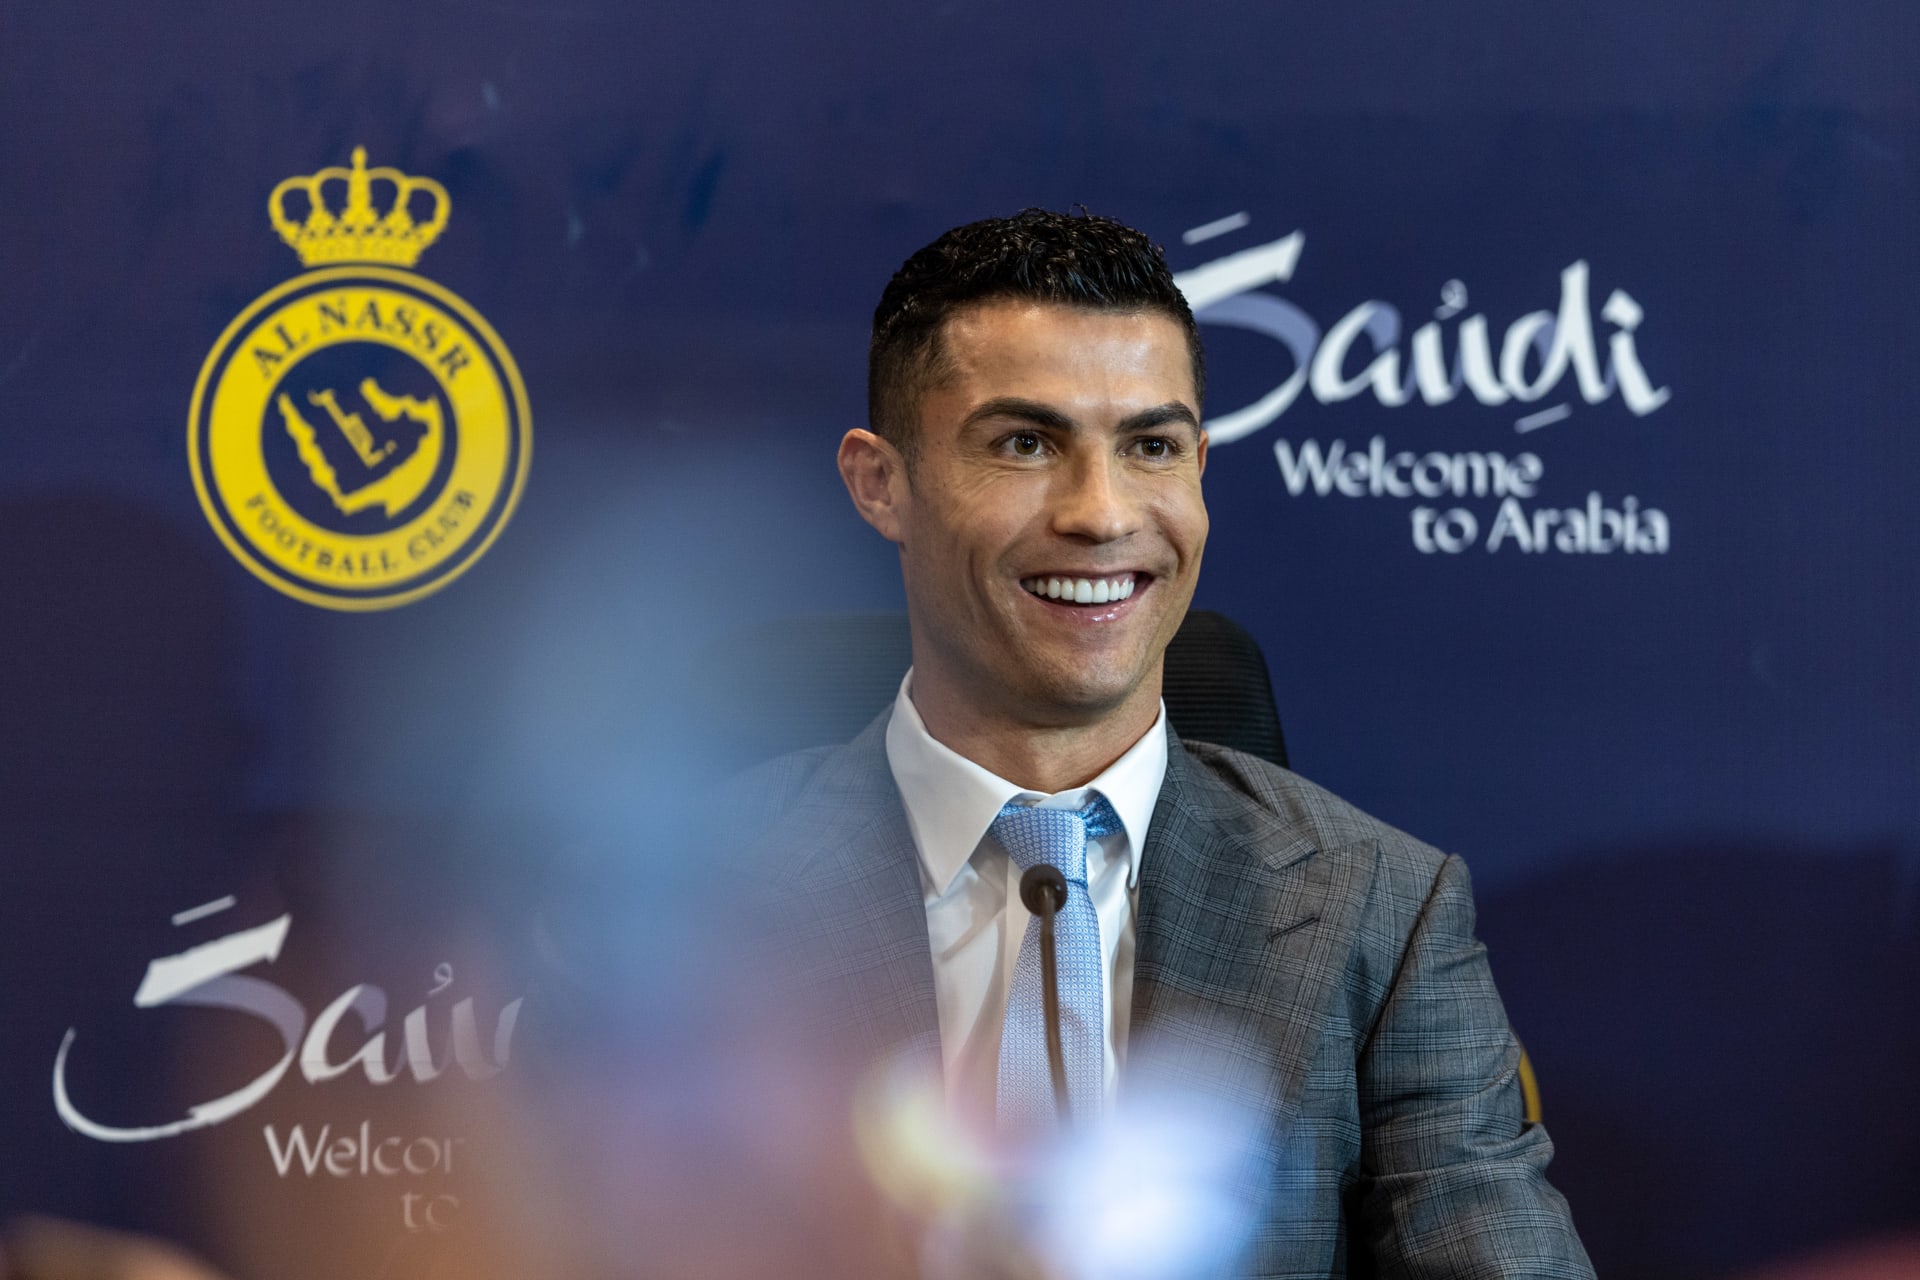 "النصر" يقدم رونالدو إلى جمهور "العالمي".. واللاعب يرد على انتقادات انتقاله للعب بالسعودية